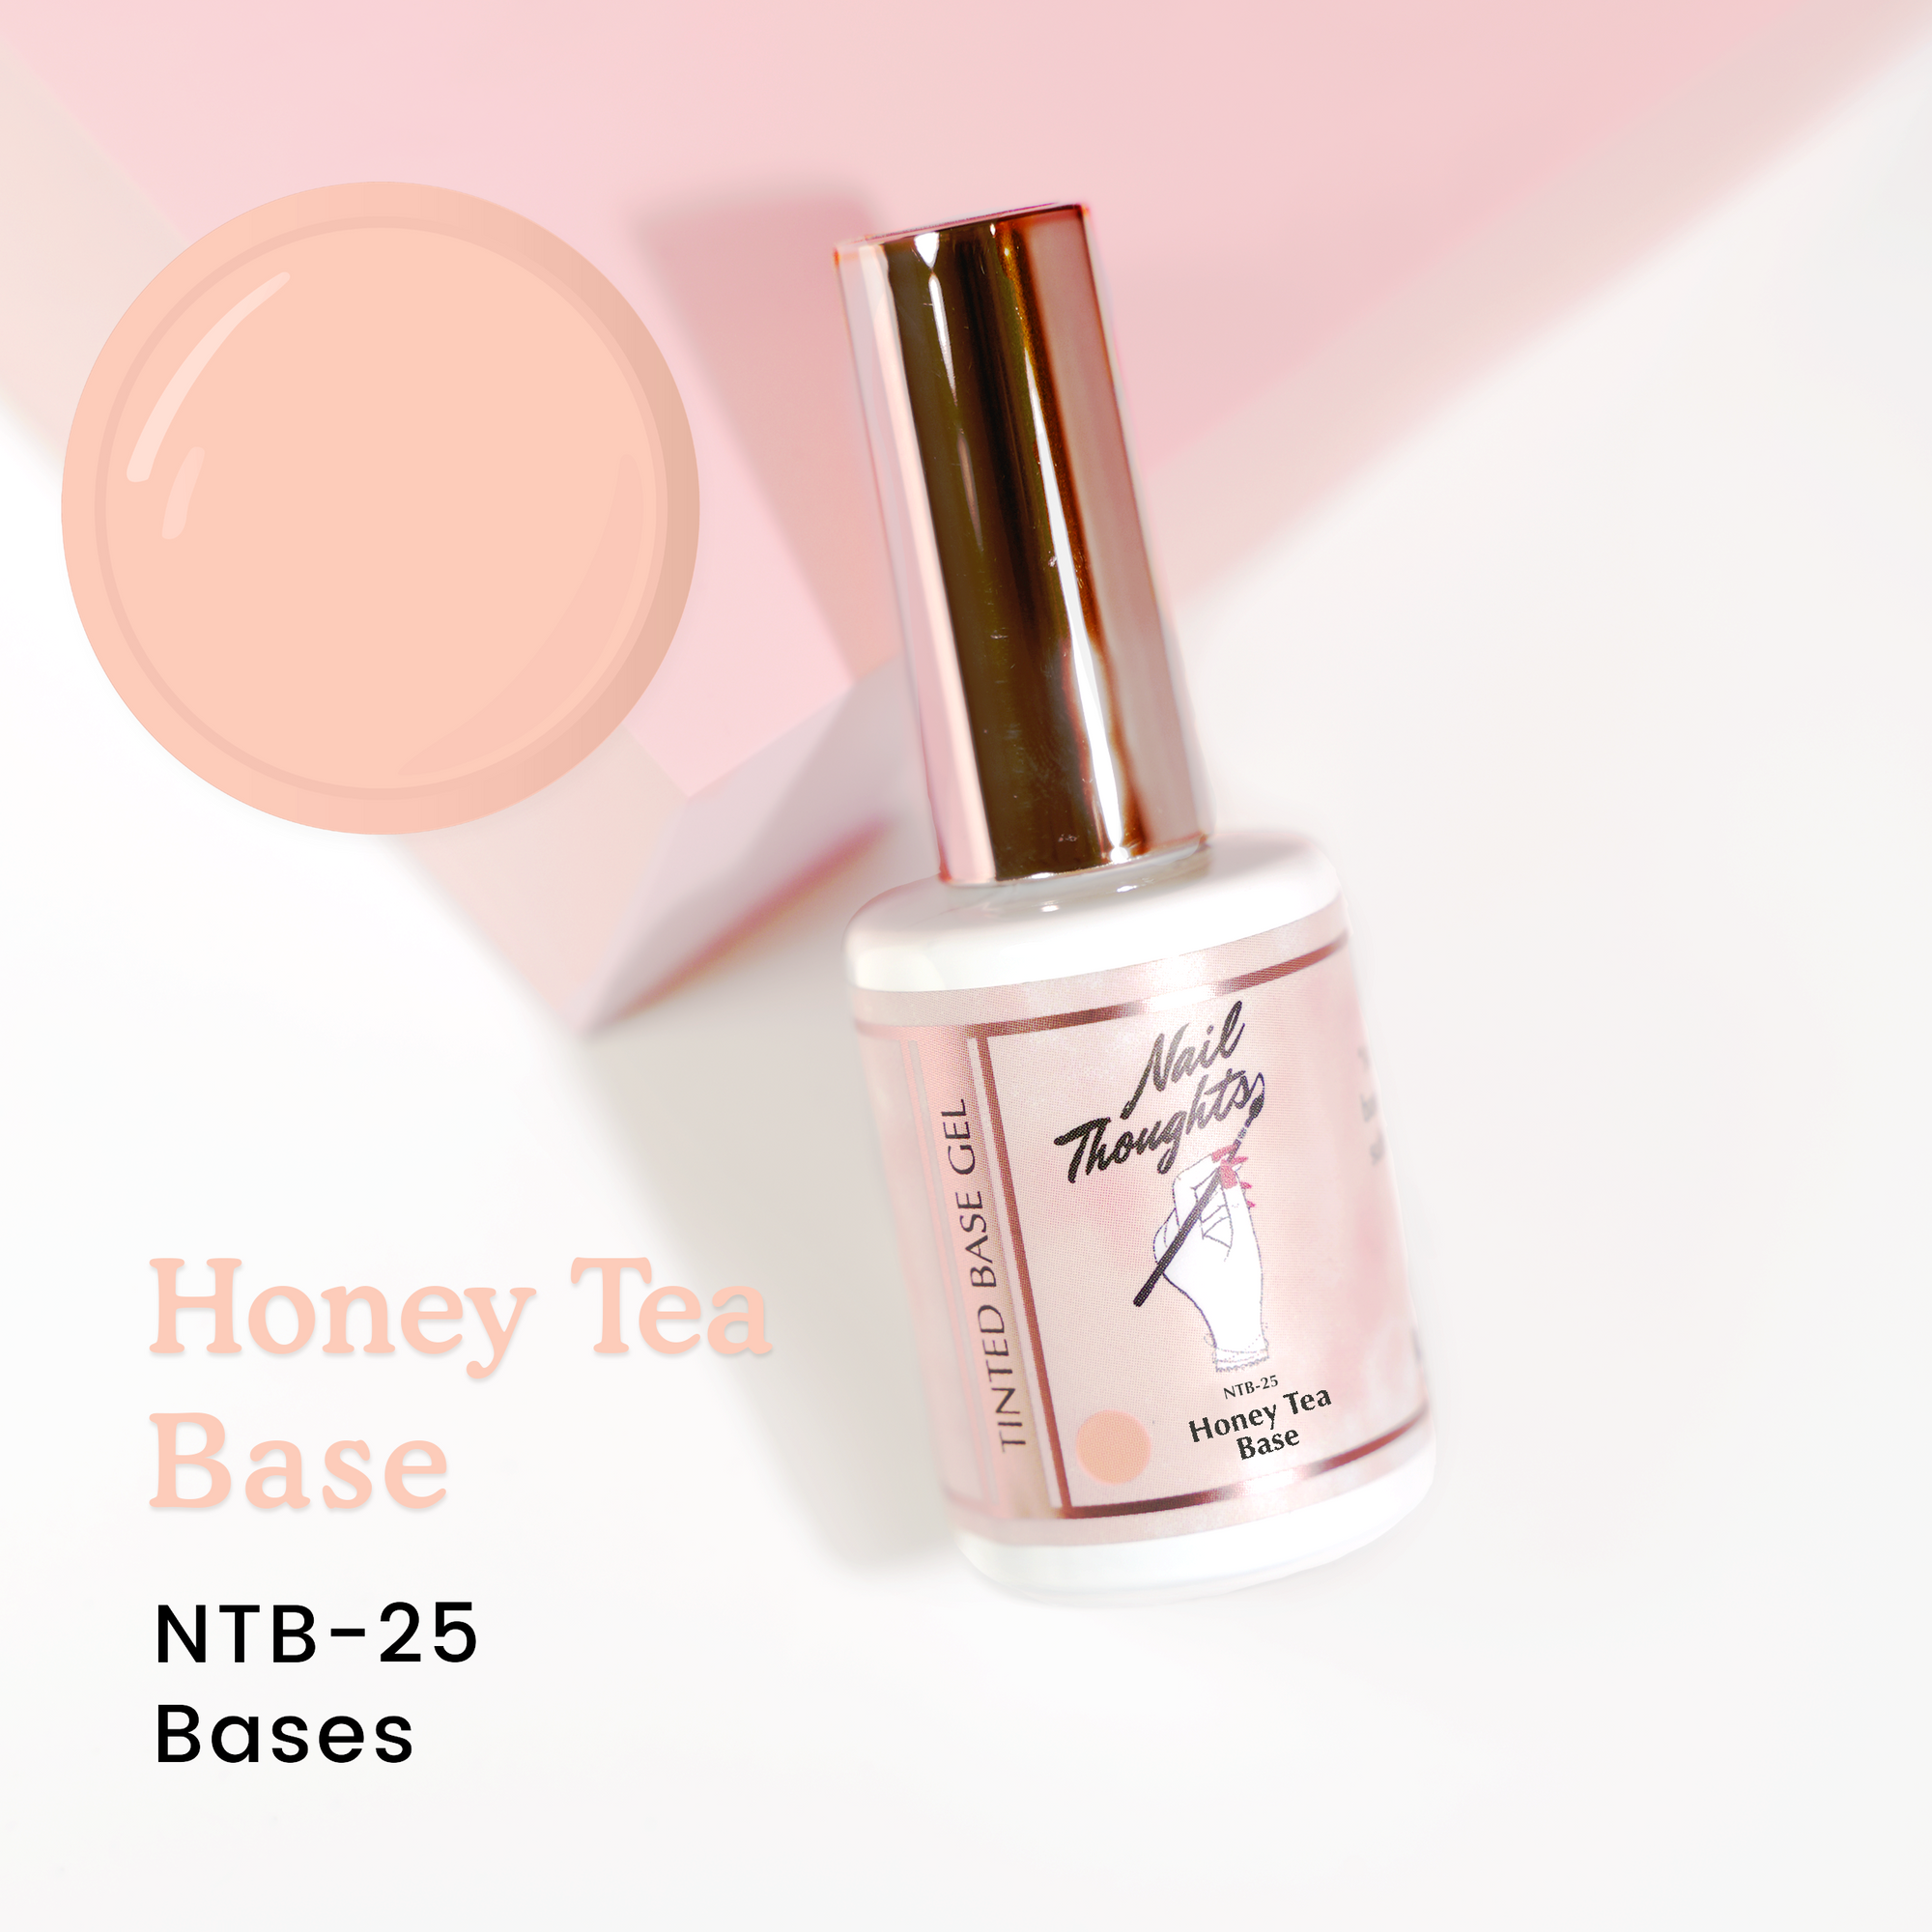 Honey Tea Base NTB-25